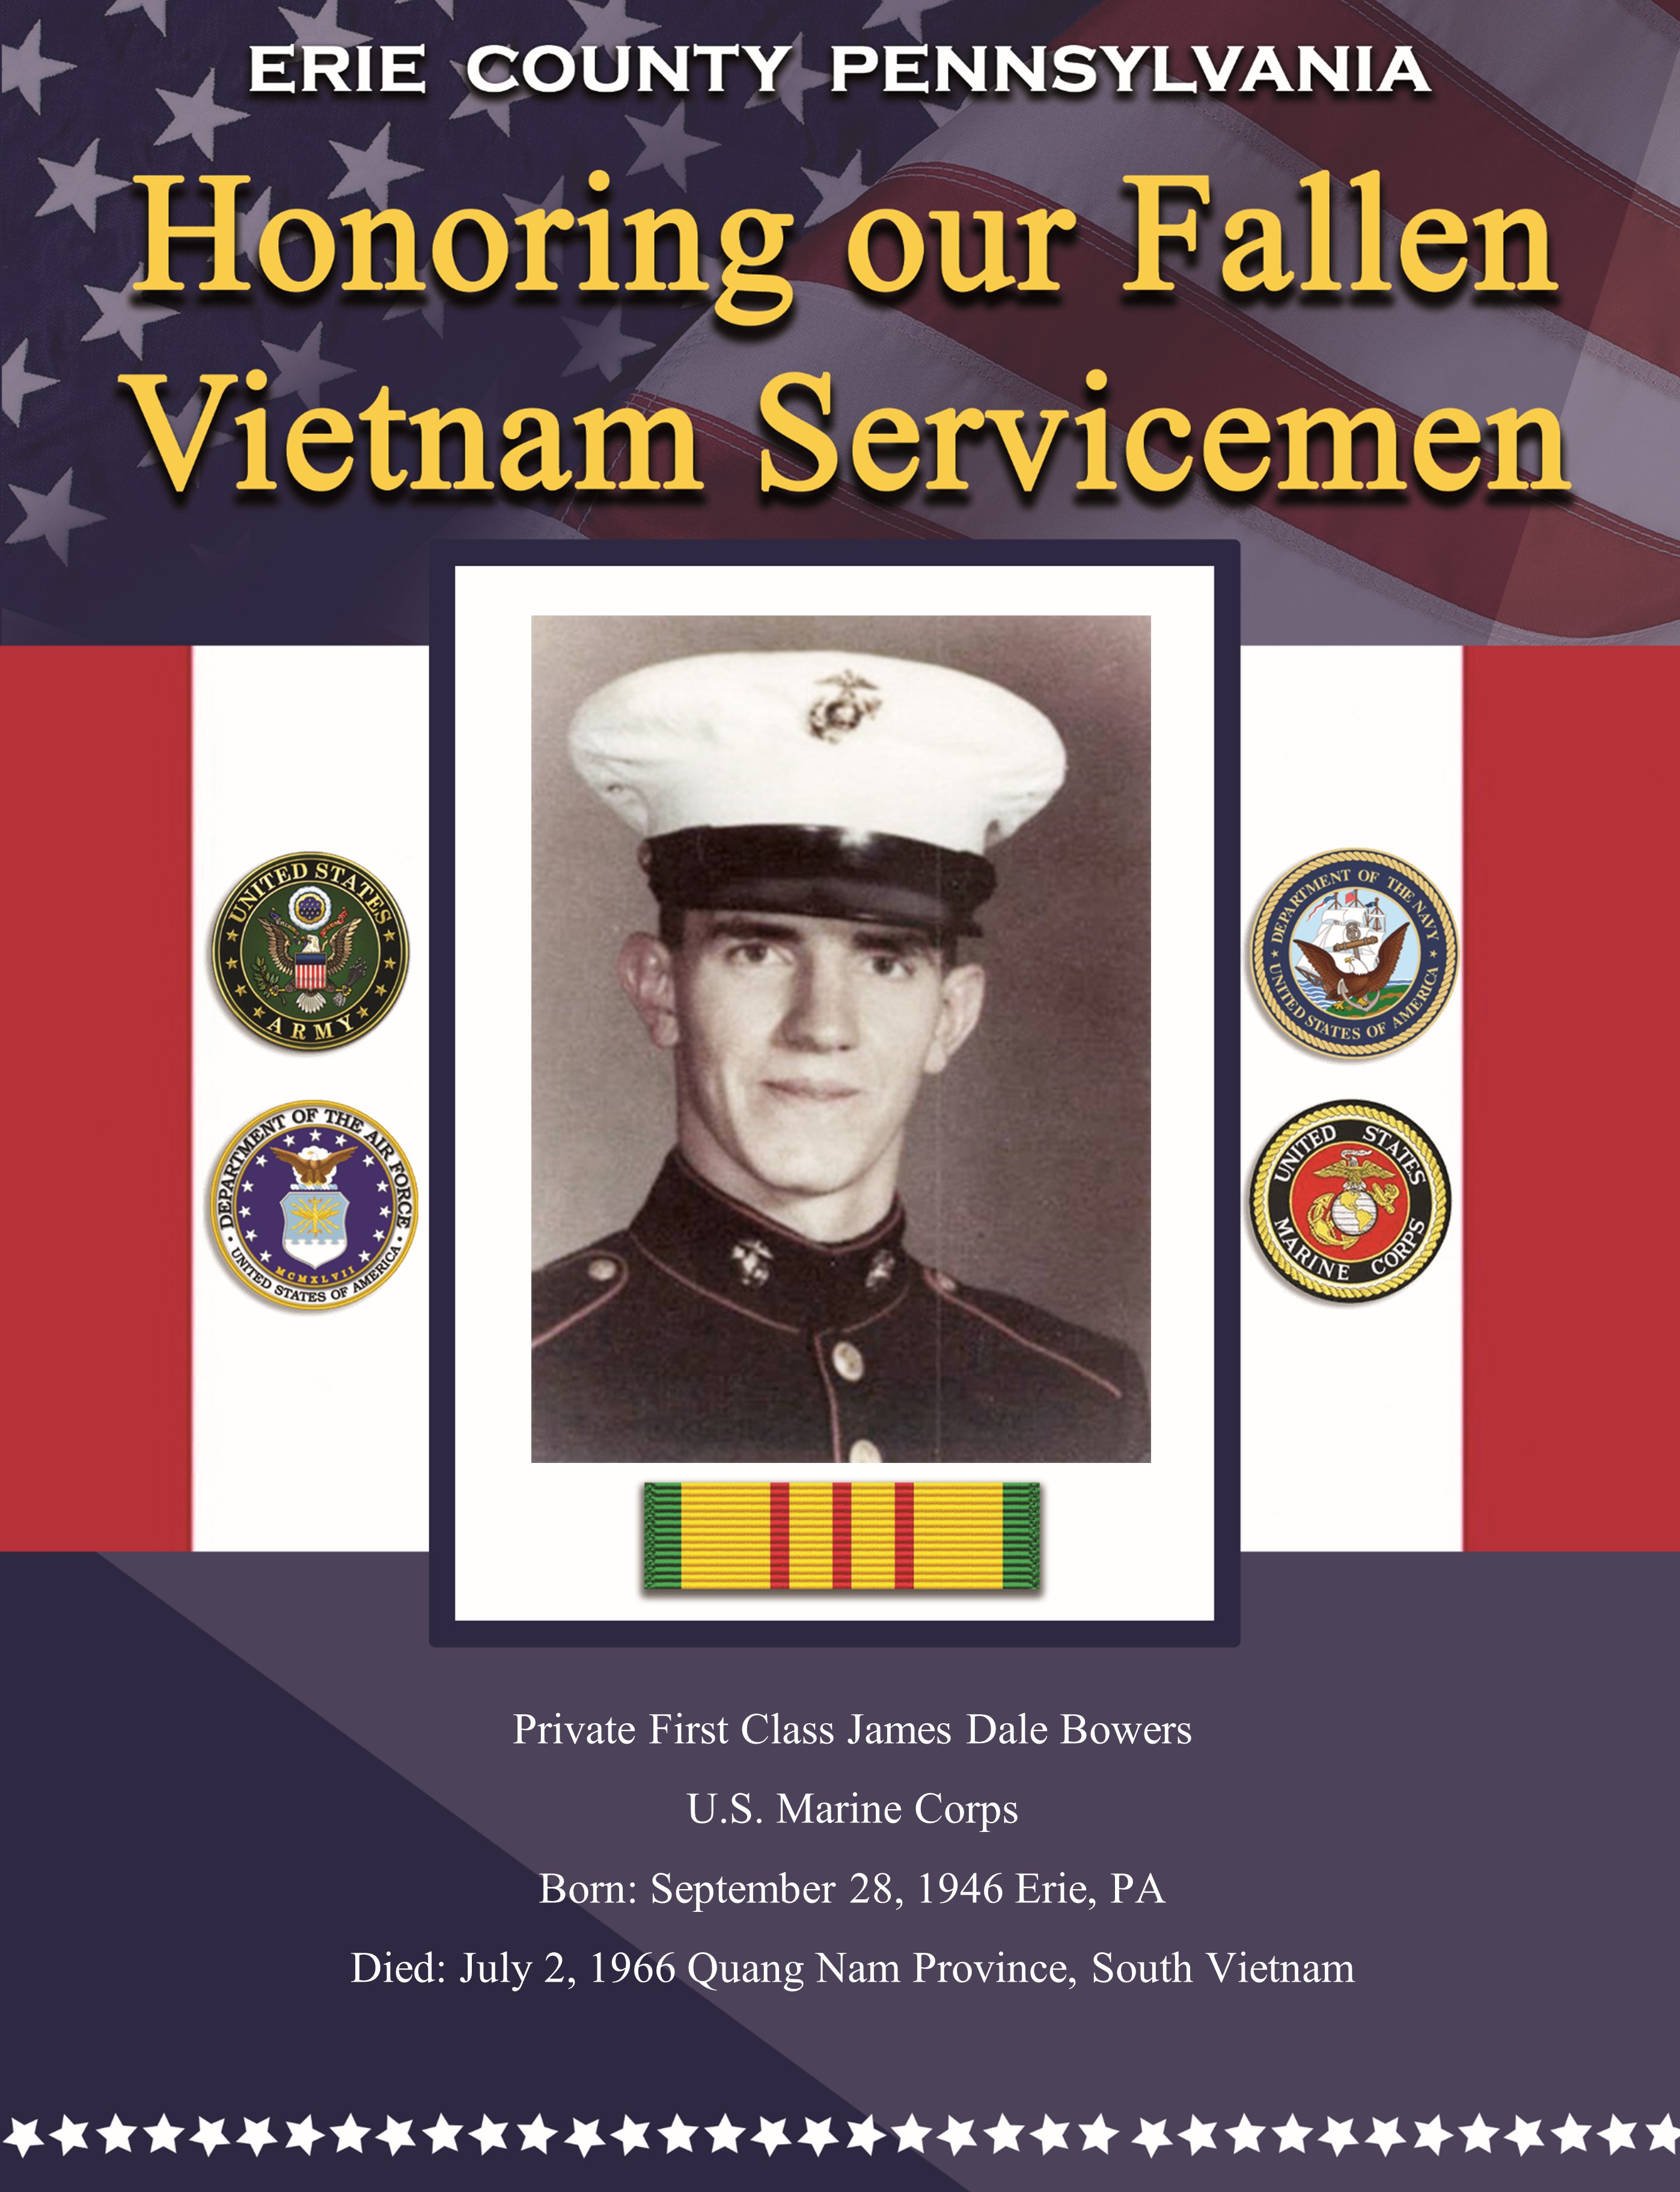 Fallen in Vietnam 5